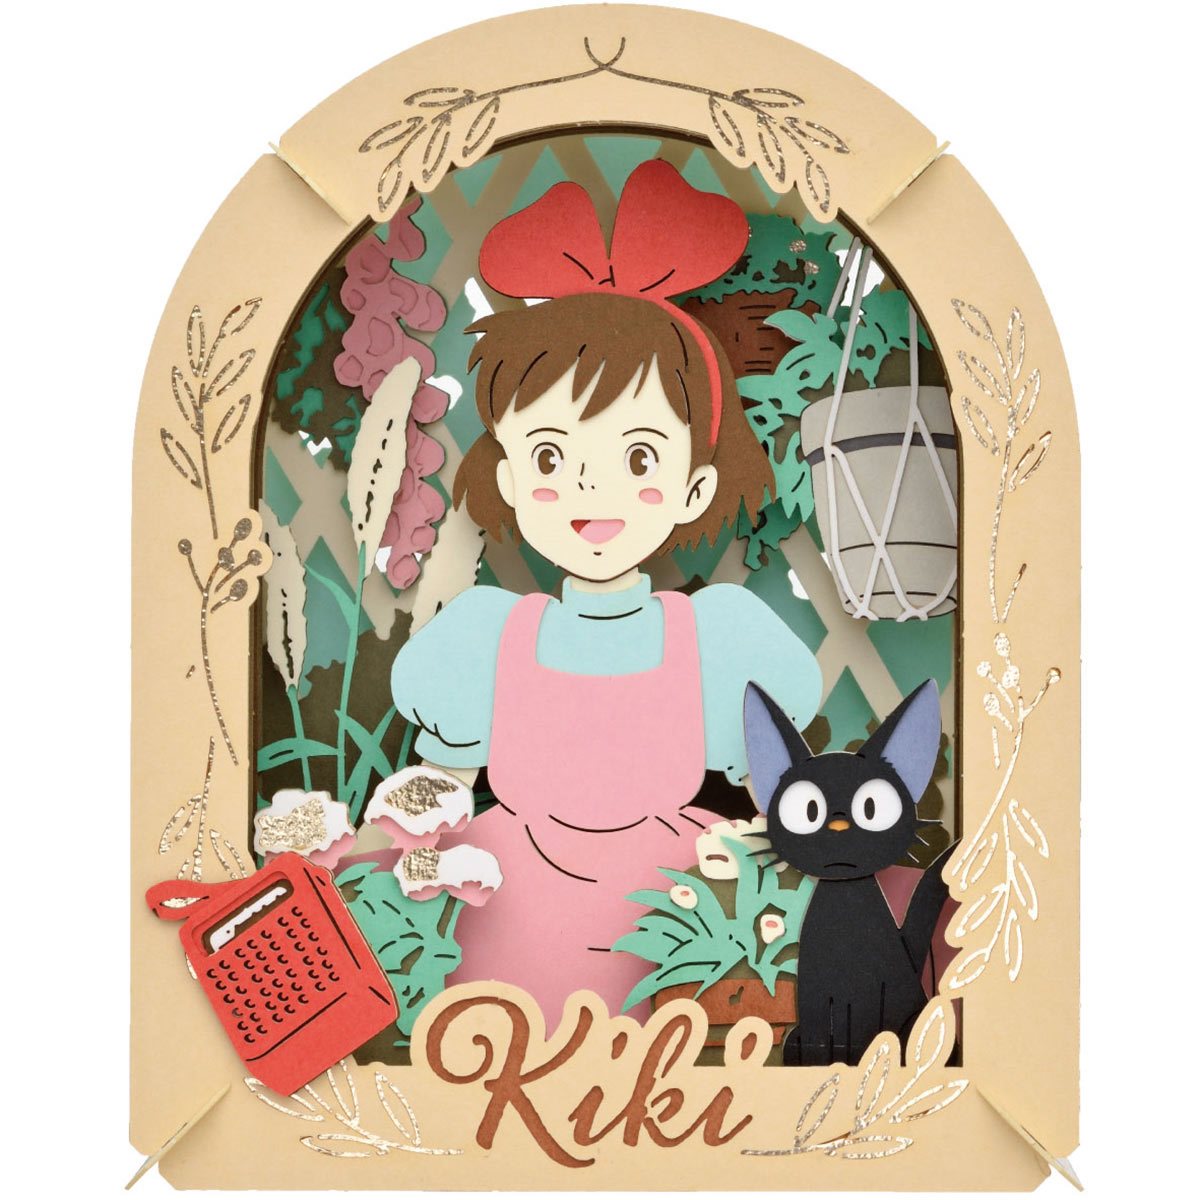 Kiki's Delivery Service Studio Ghibli Paper Theater Ball